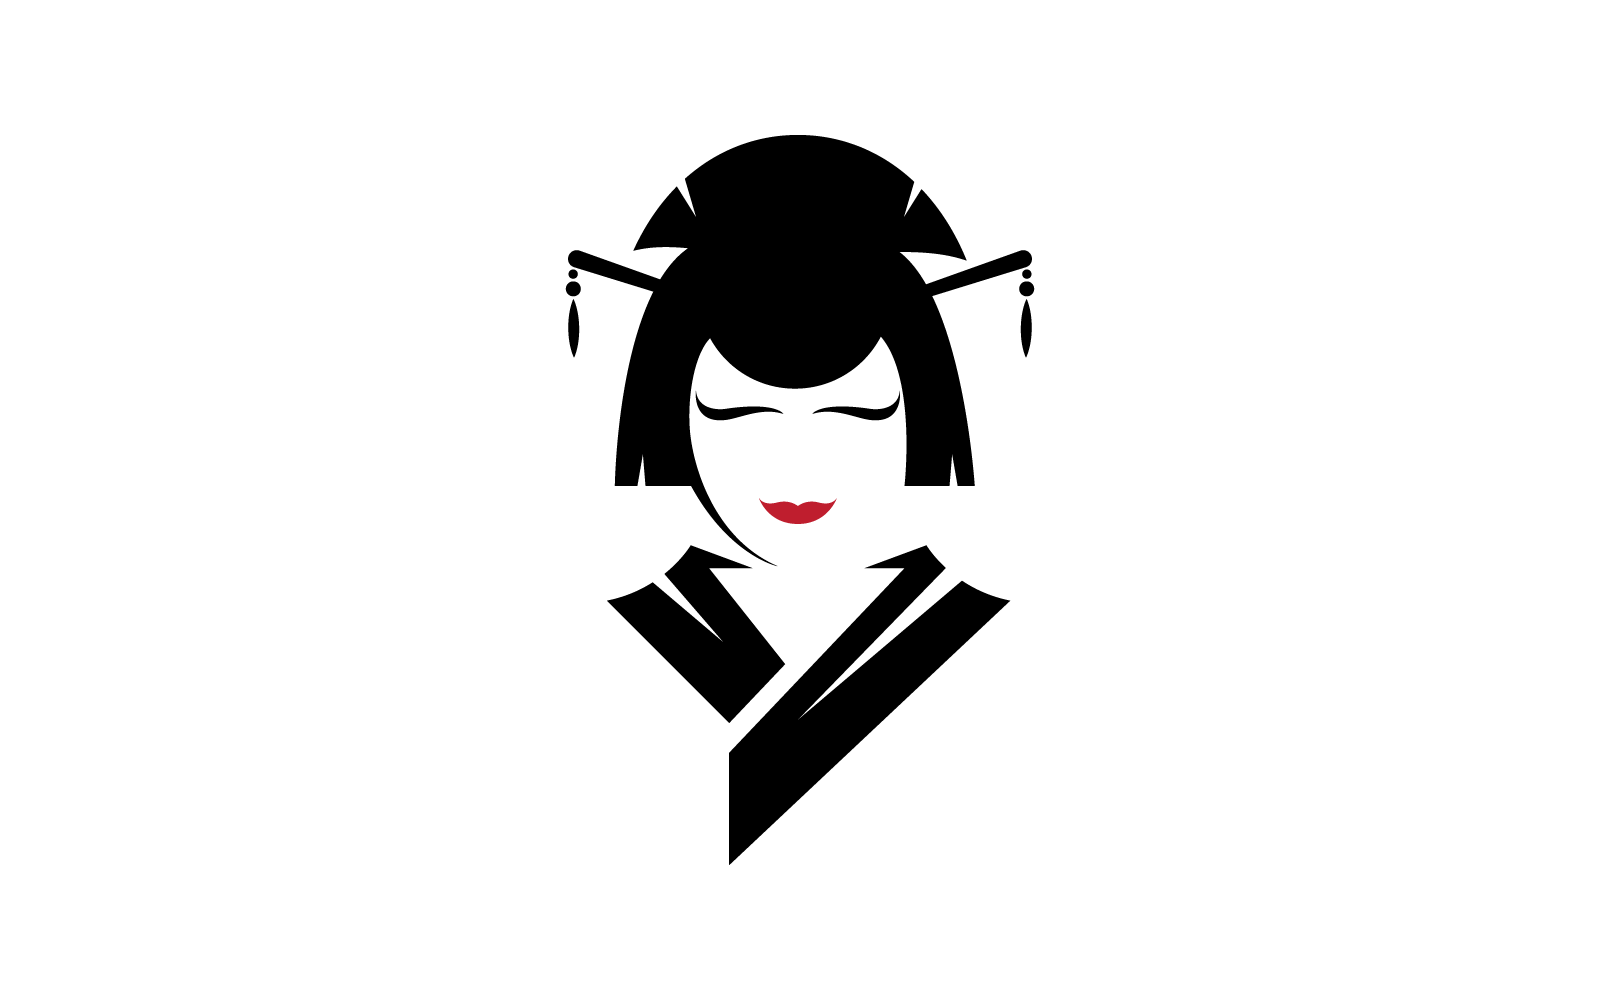 Geisha face kimono traditional style logo vector flat design